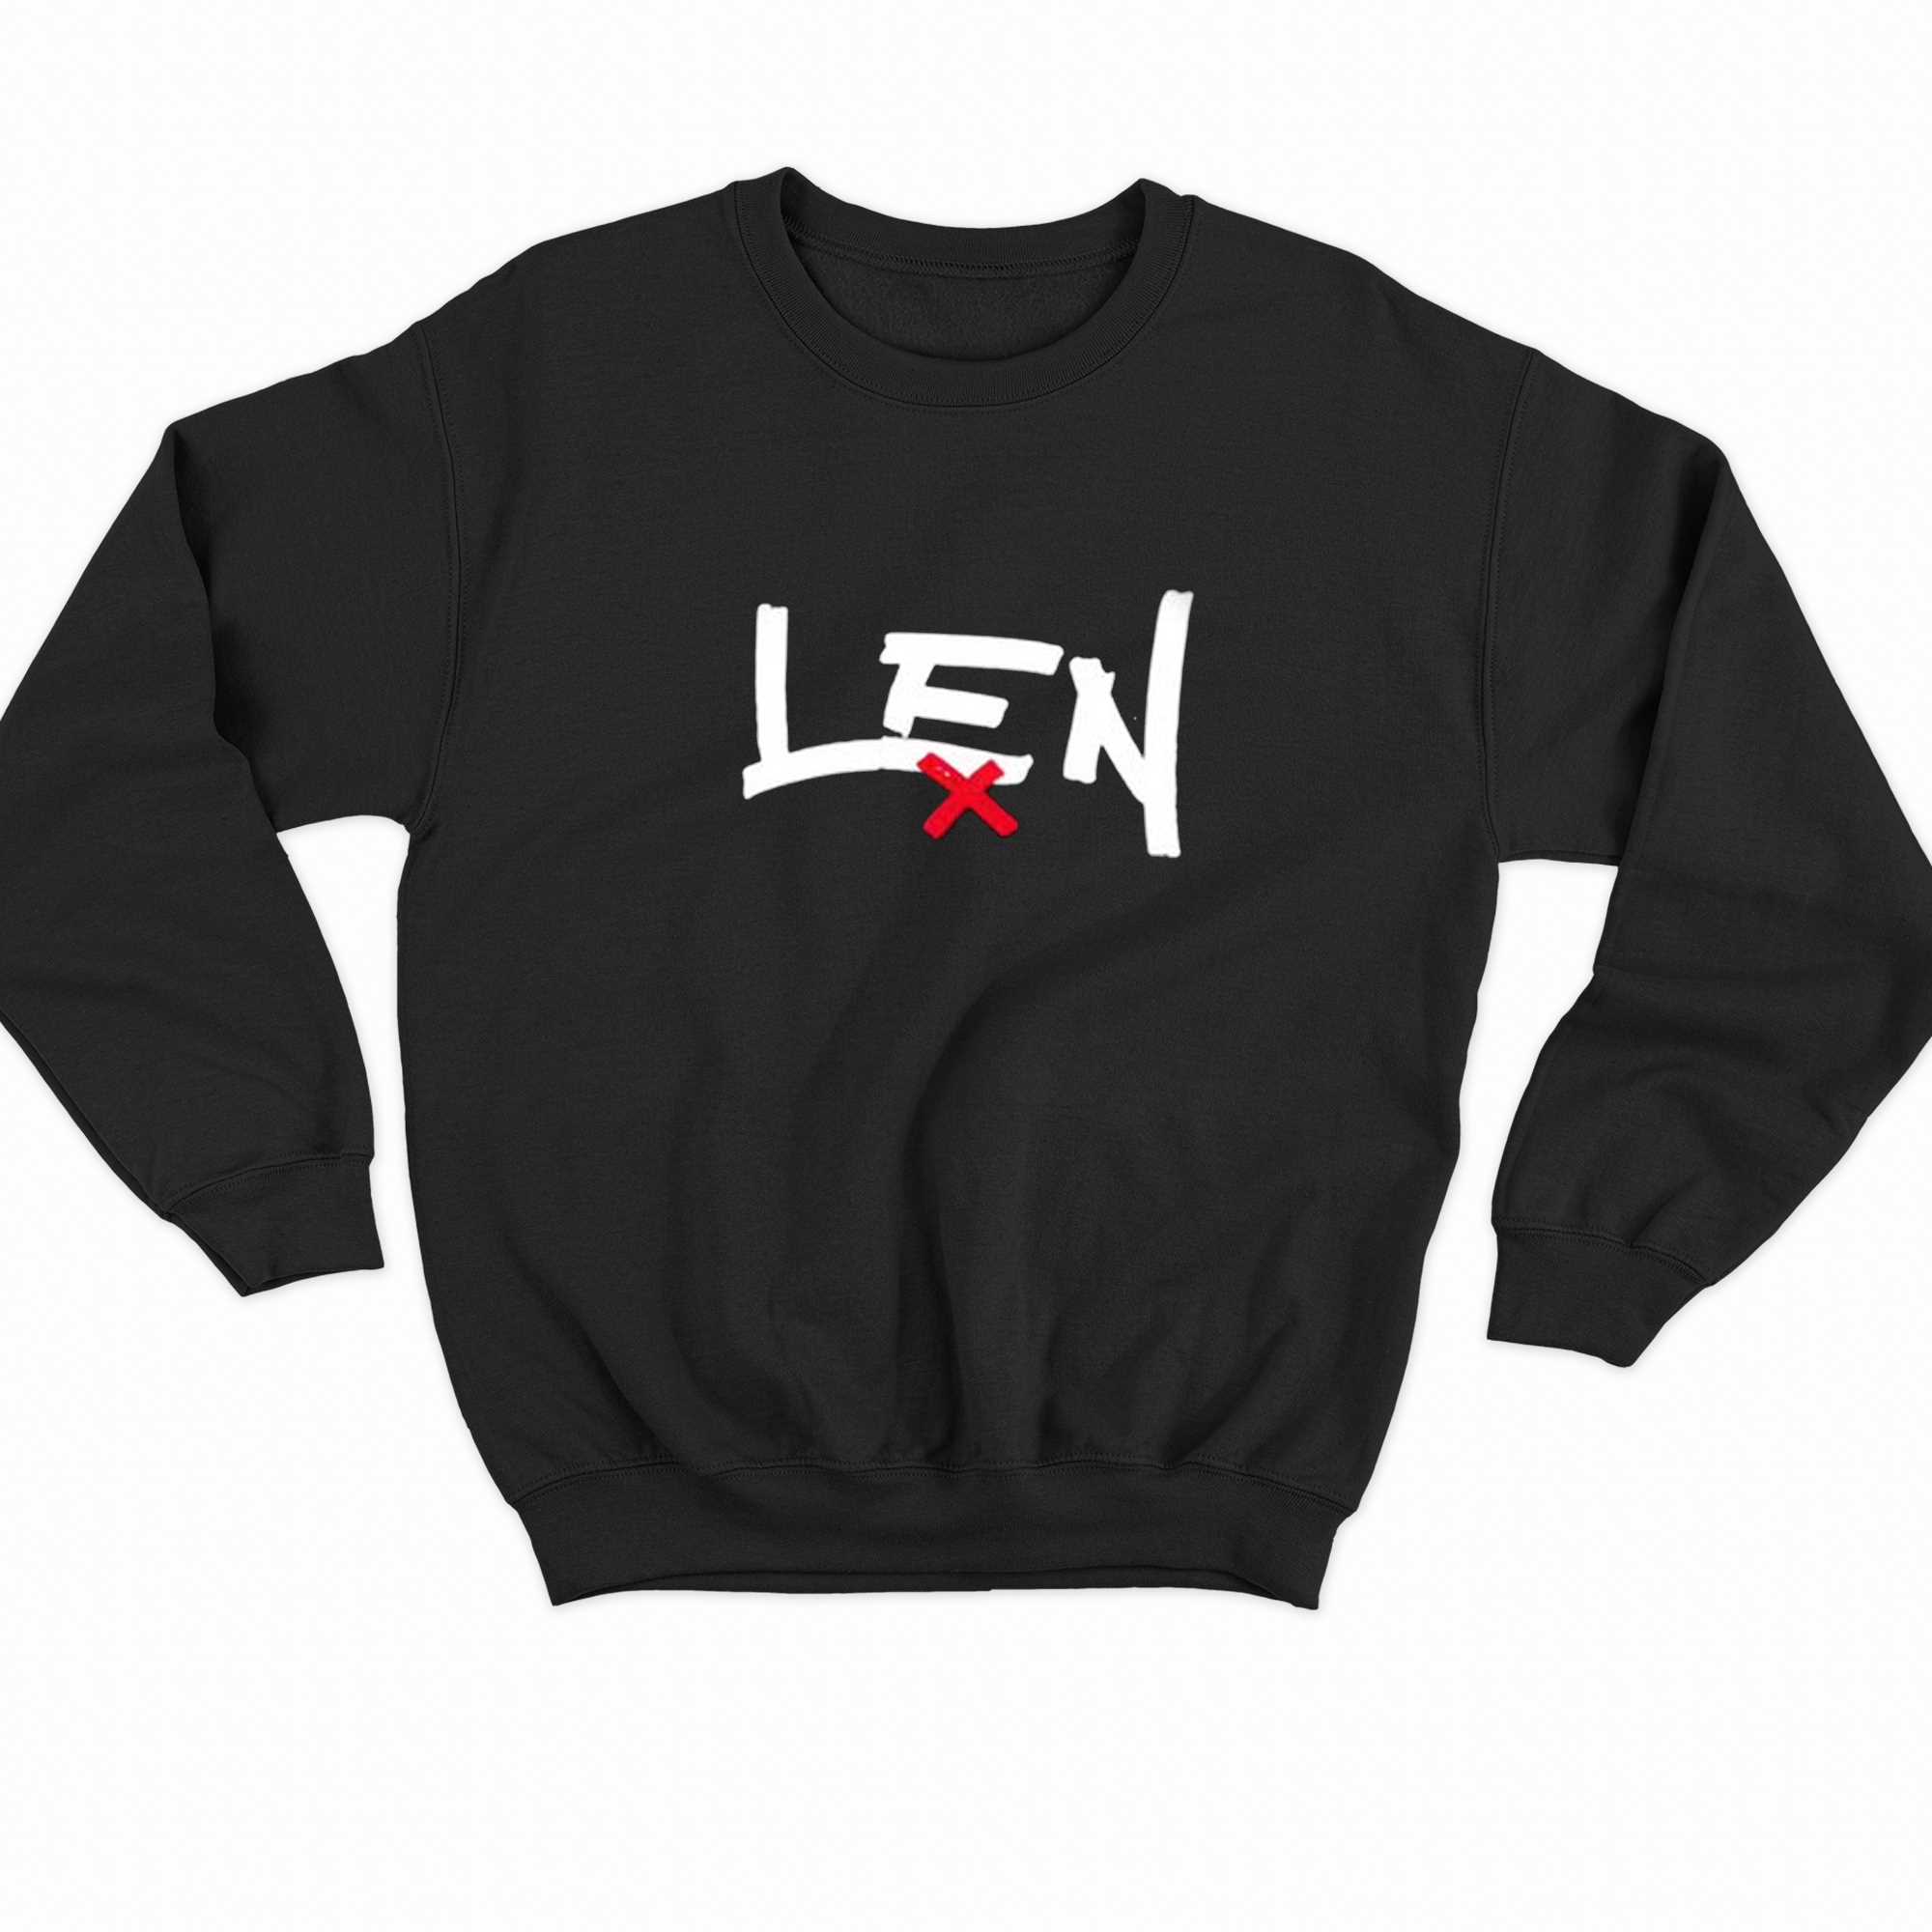 The Len Shirt 